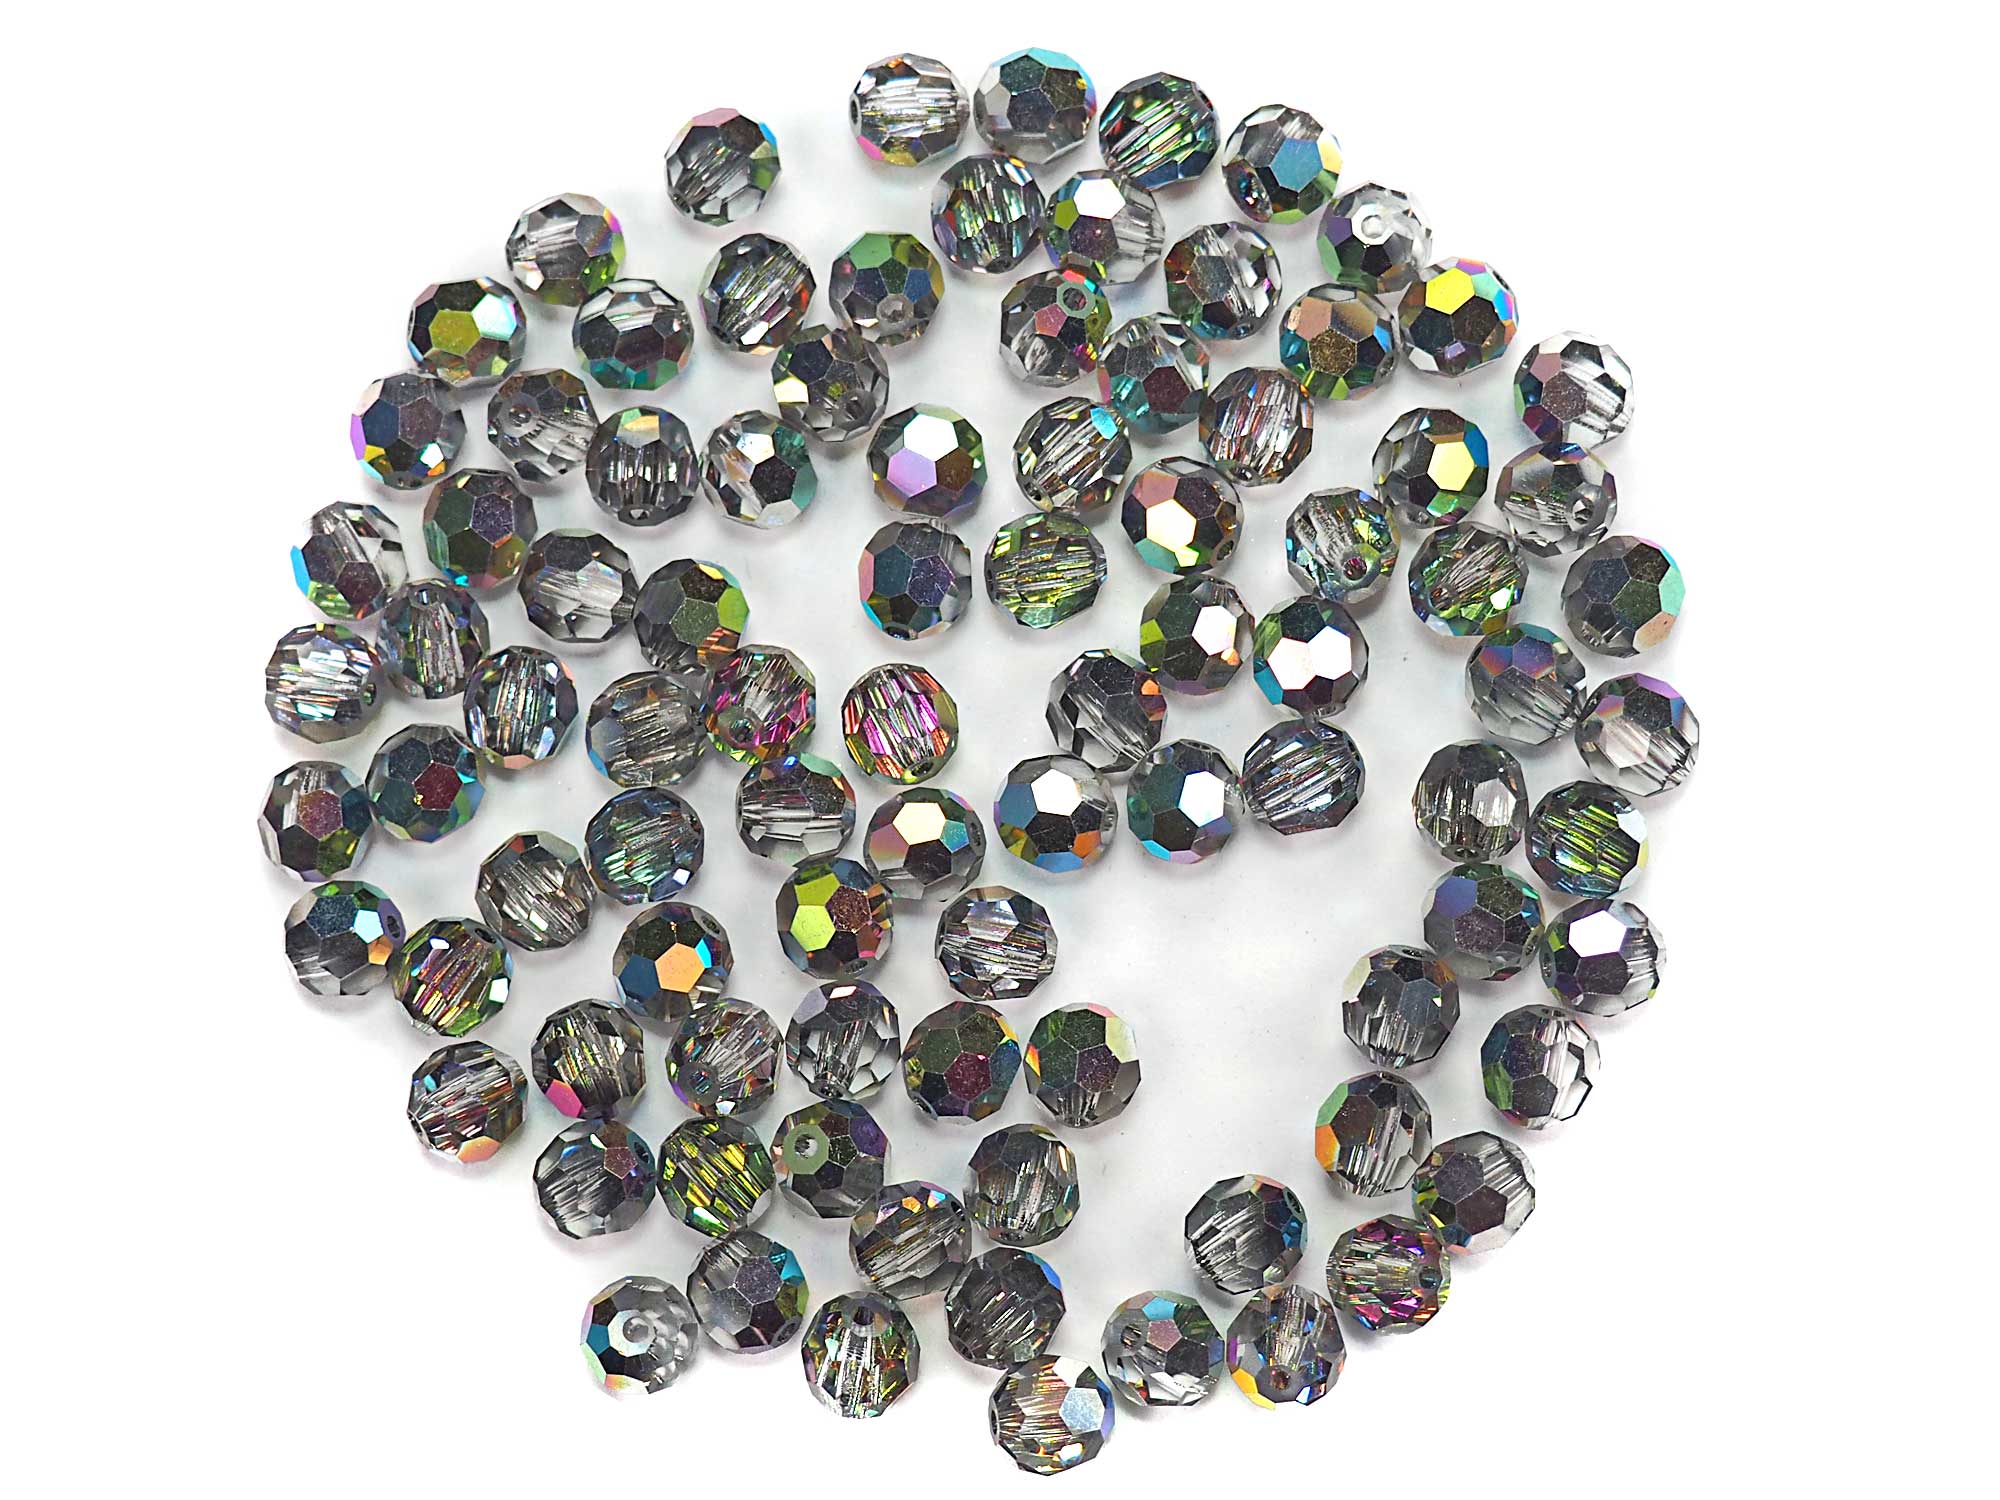 Crystal Vitrail Medium 2-side coated, Czech Machine Cut Round Crystal Beads (Vitrail Medium 2sd) 6mm 8mm